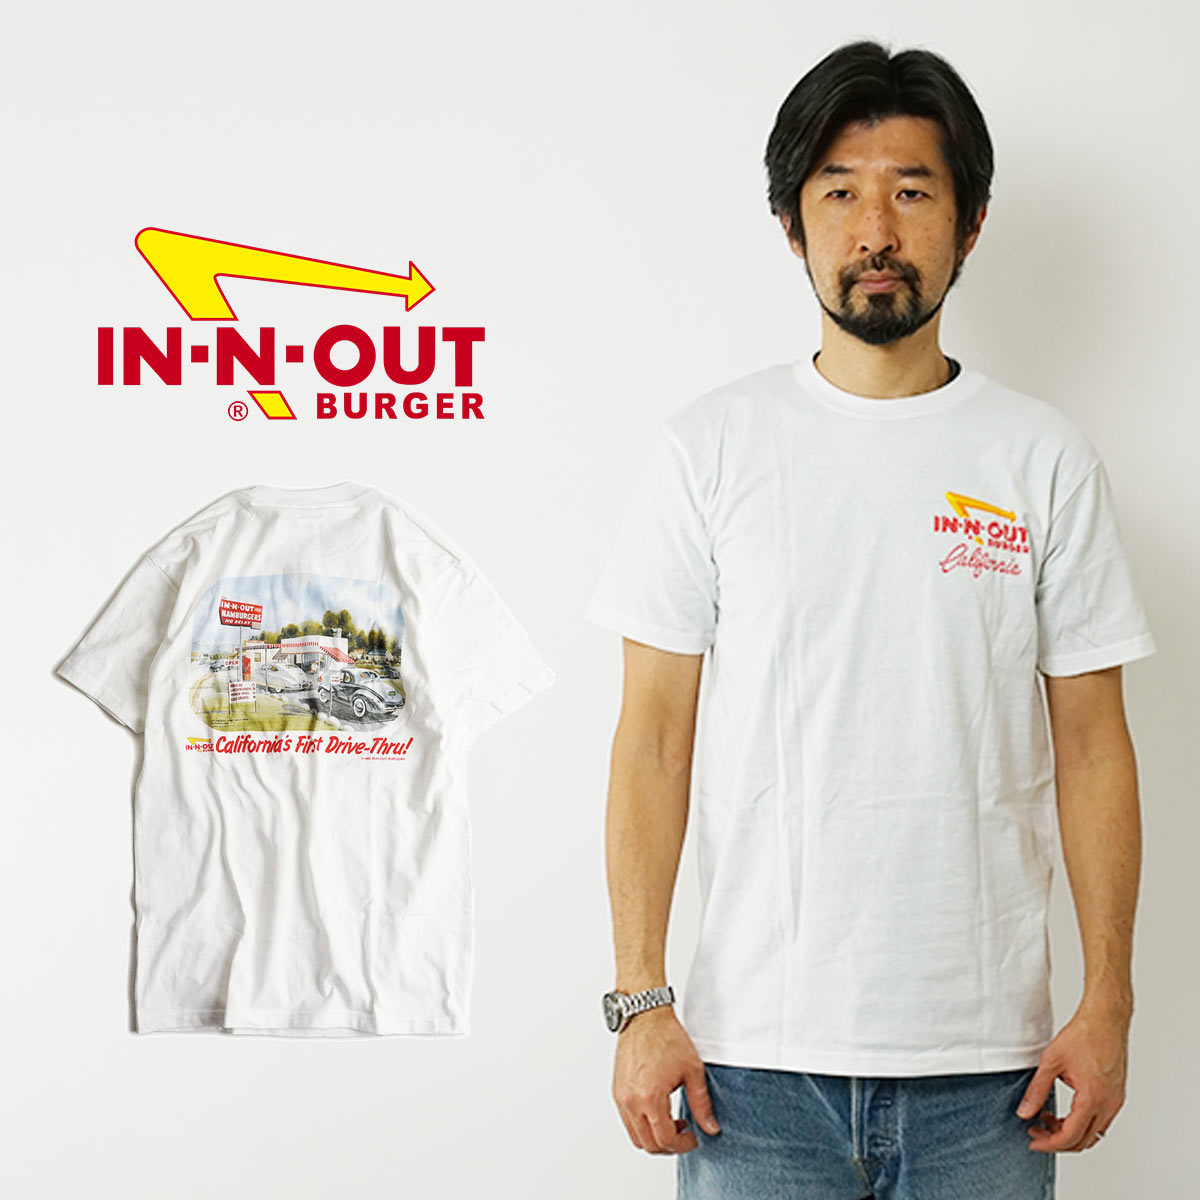 【クーポン配布中】インアンドアウトバーガー 半袖 Tシャツ 1986 カリフォルニア ファースト ドライブスルー ホワイト (メンズ S-XXL In-N-Out Burger ご当地Tシャツ 海外買い付け スーベニア)